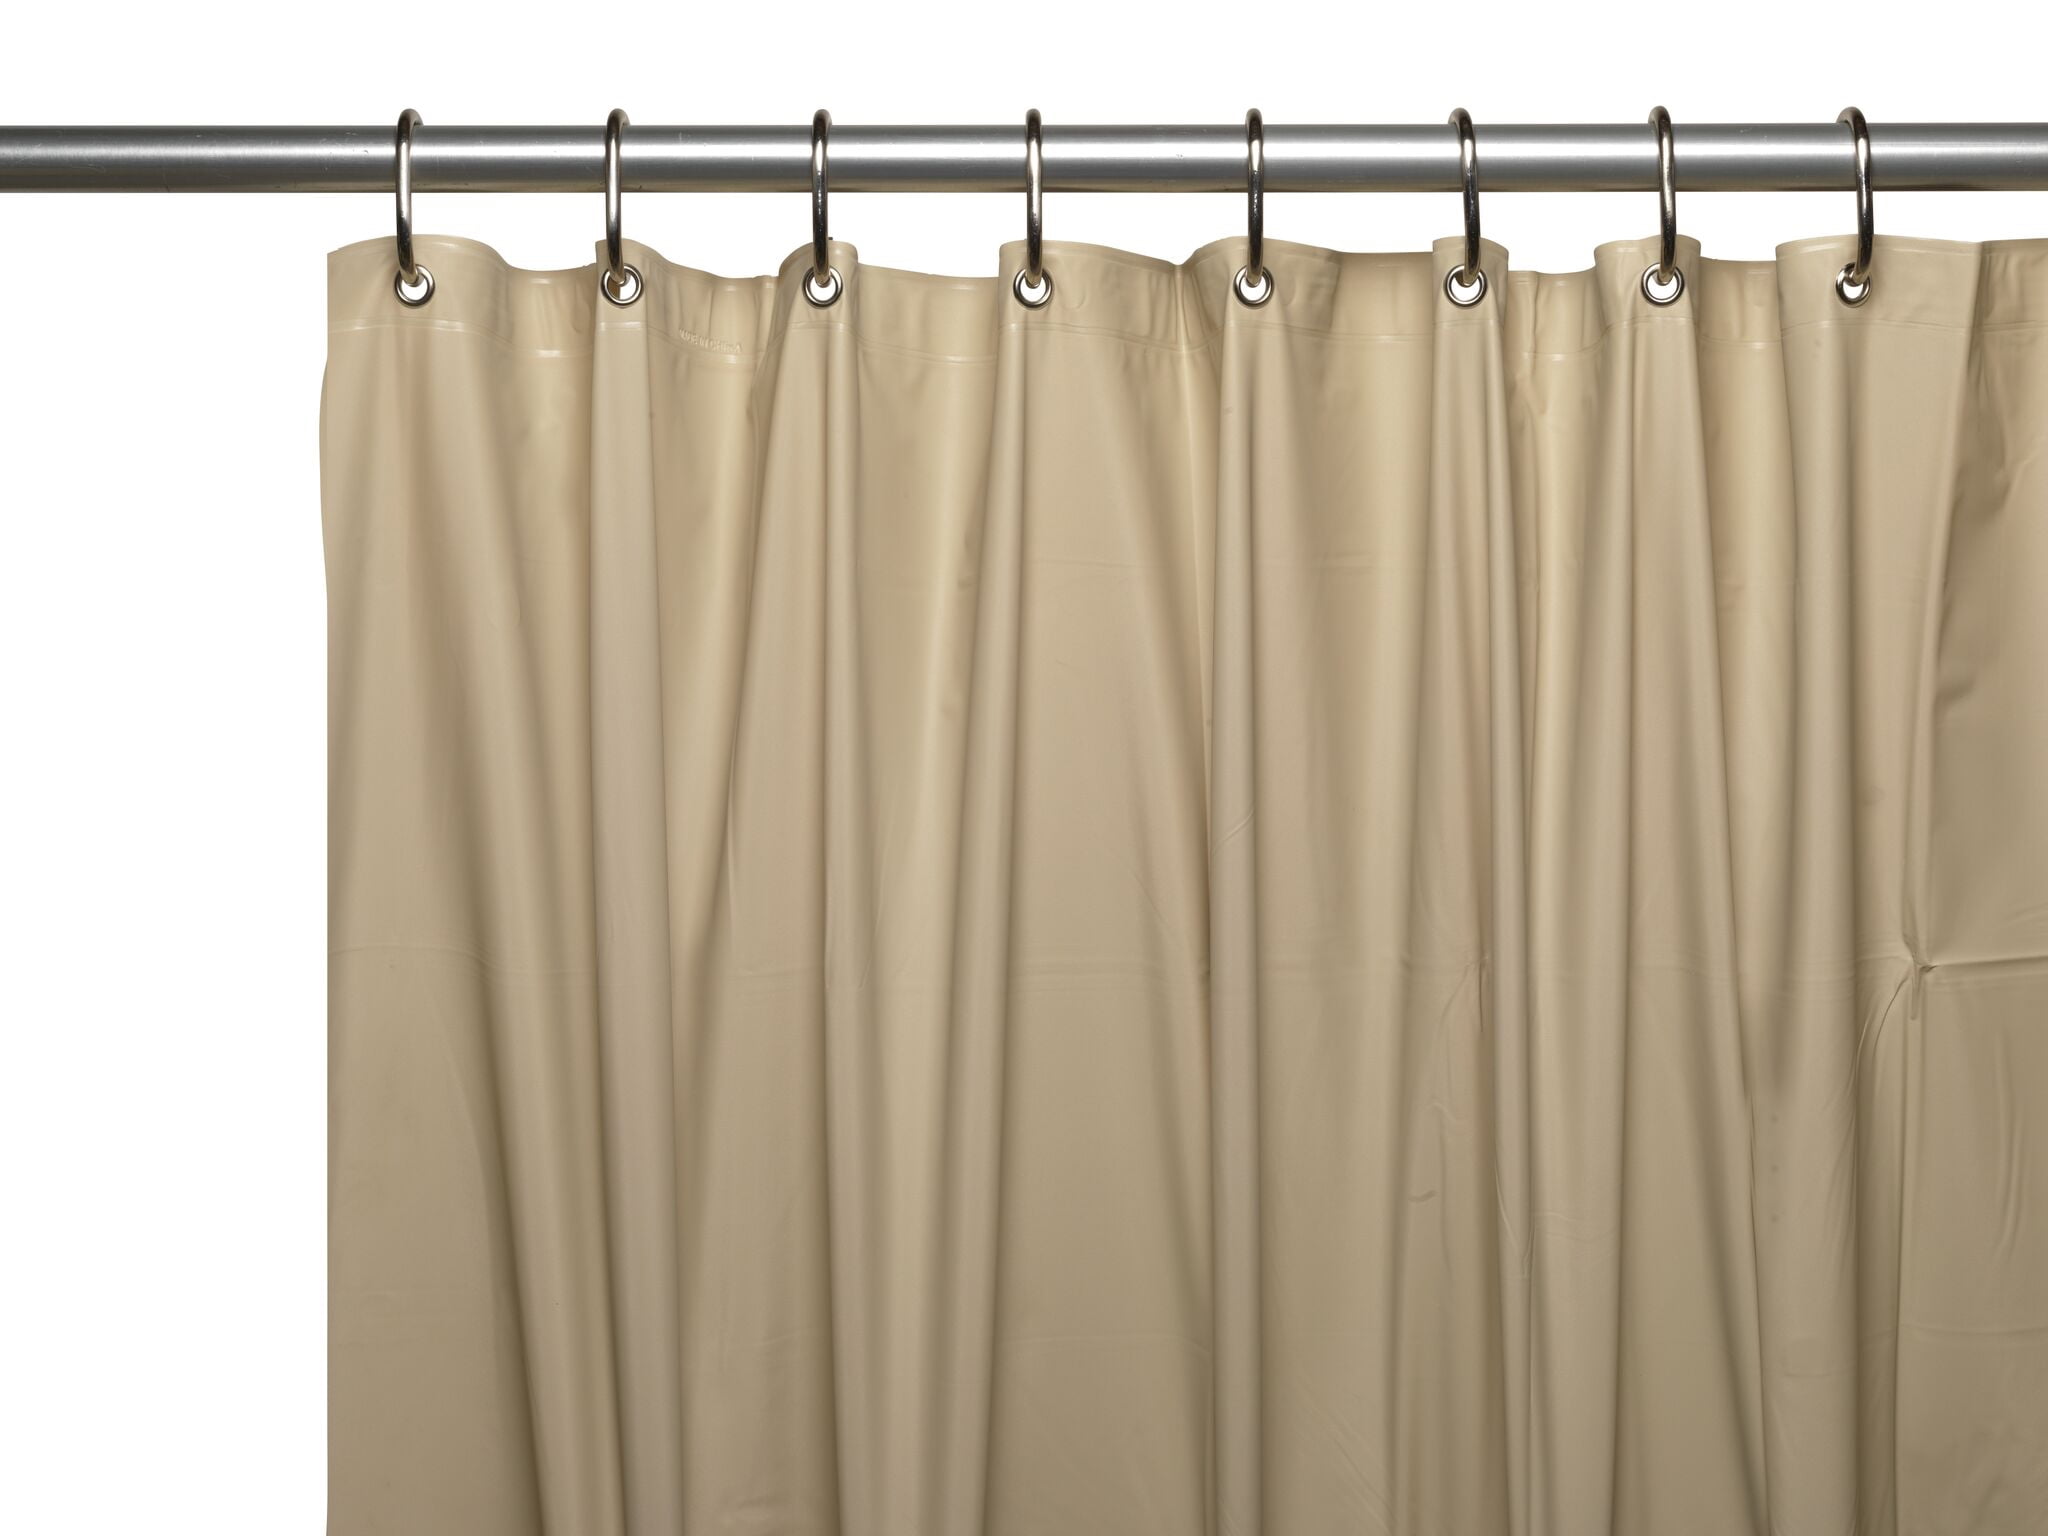 Heavy Duty Vinyl Shower Curtain Liner, Extra Heavy Duty Shower Curtain Liner